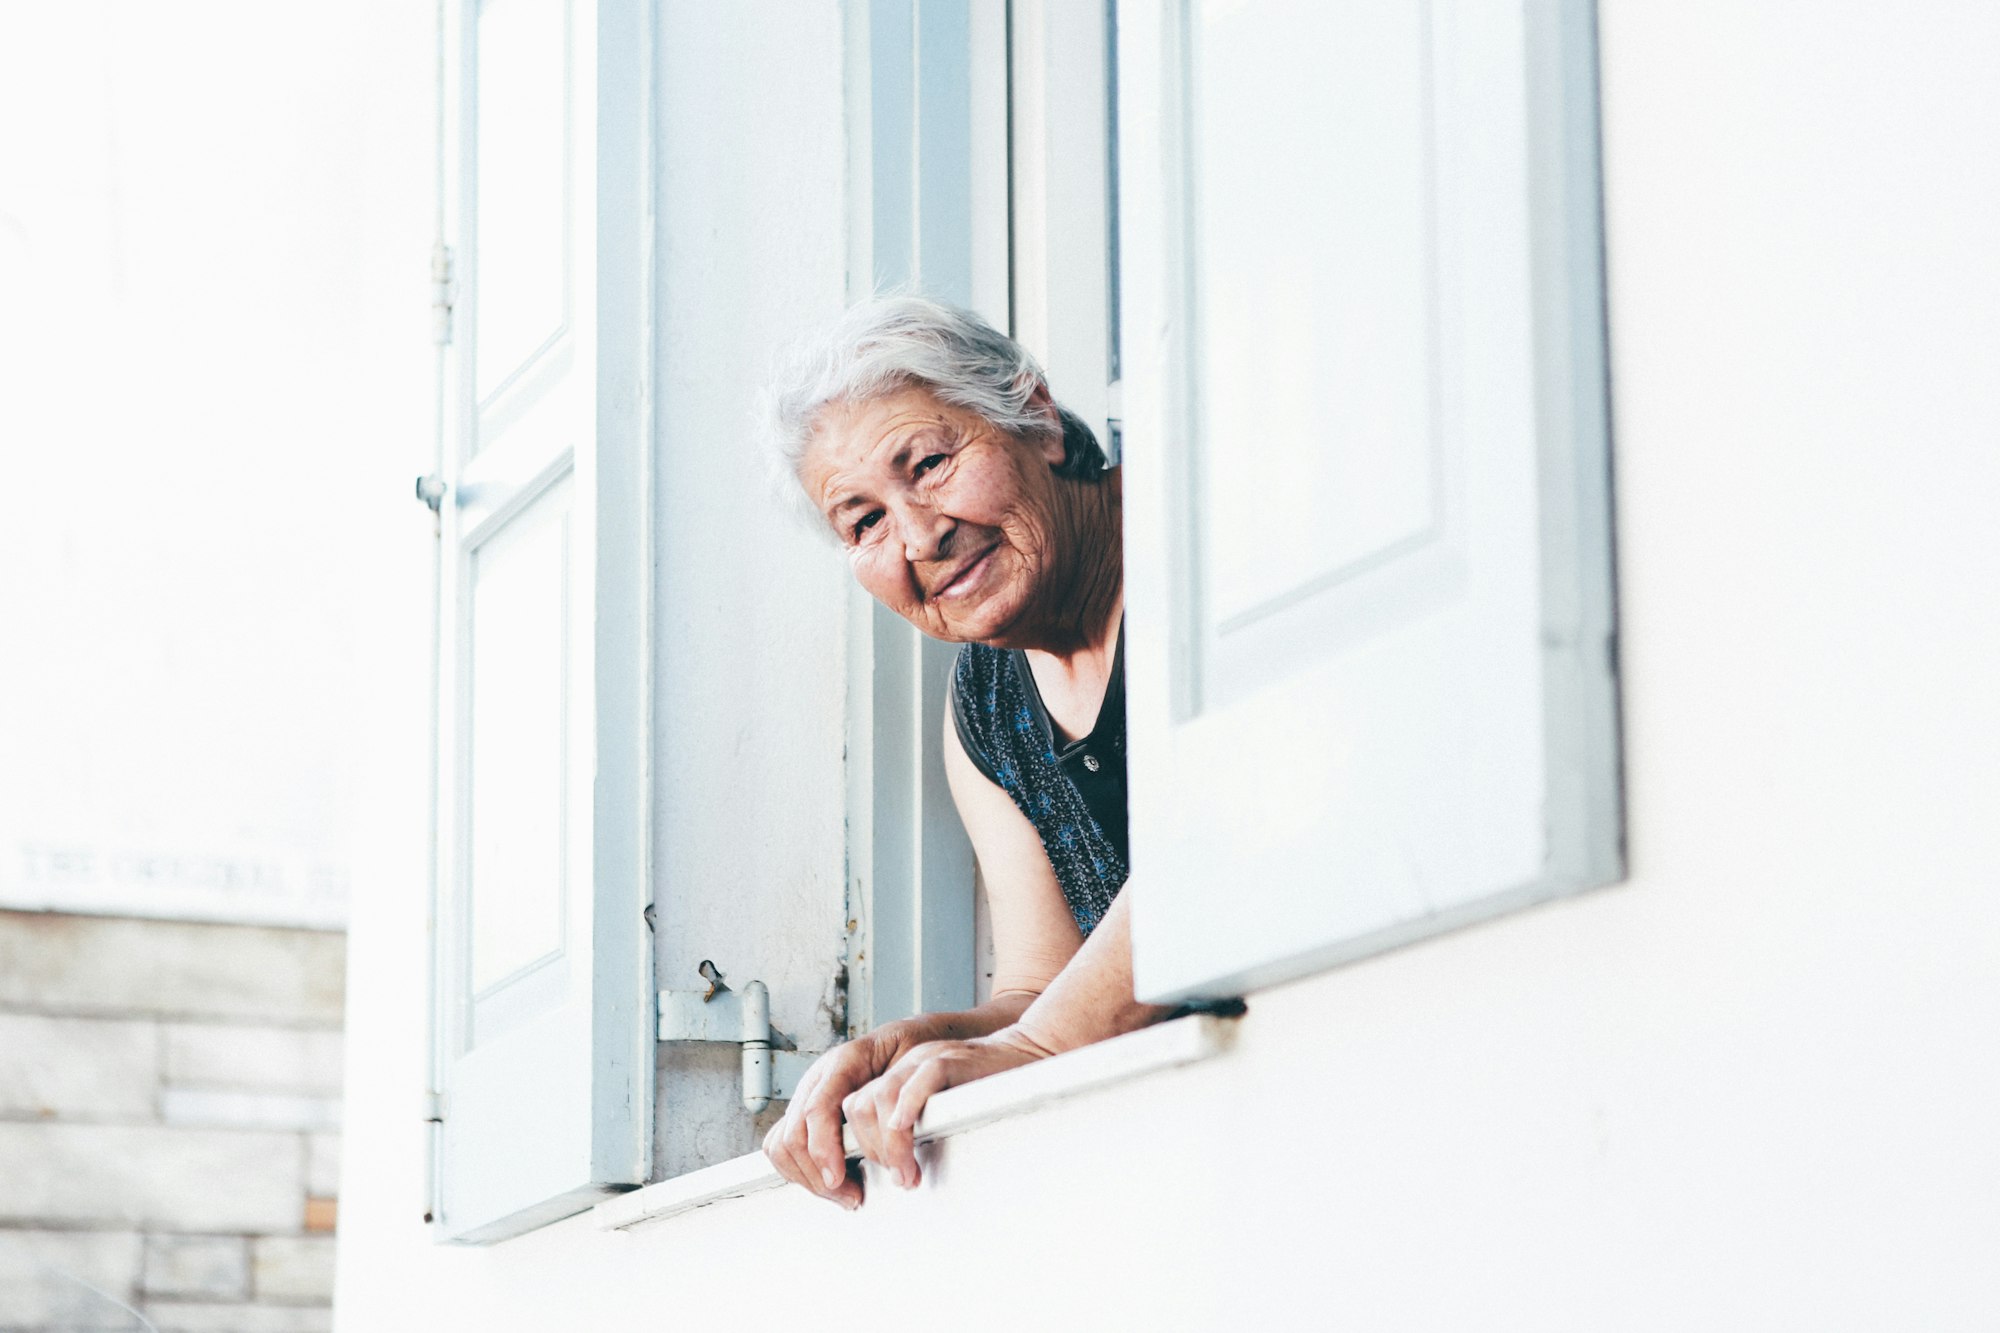 An elderly woman peeking outside a window